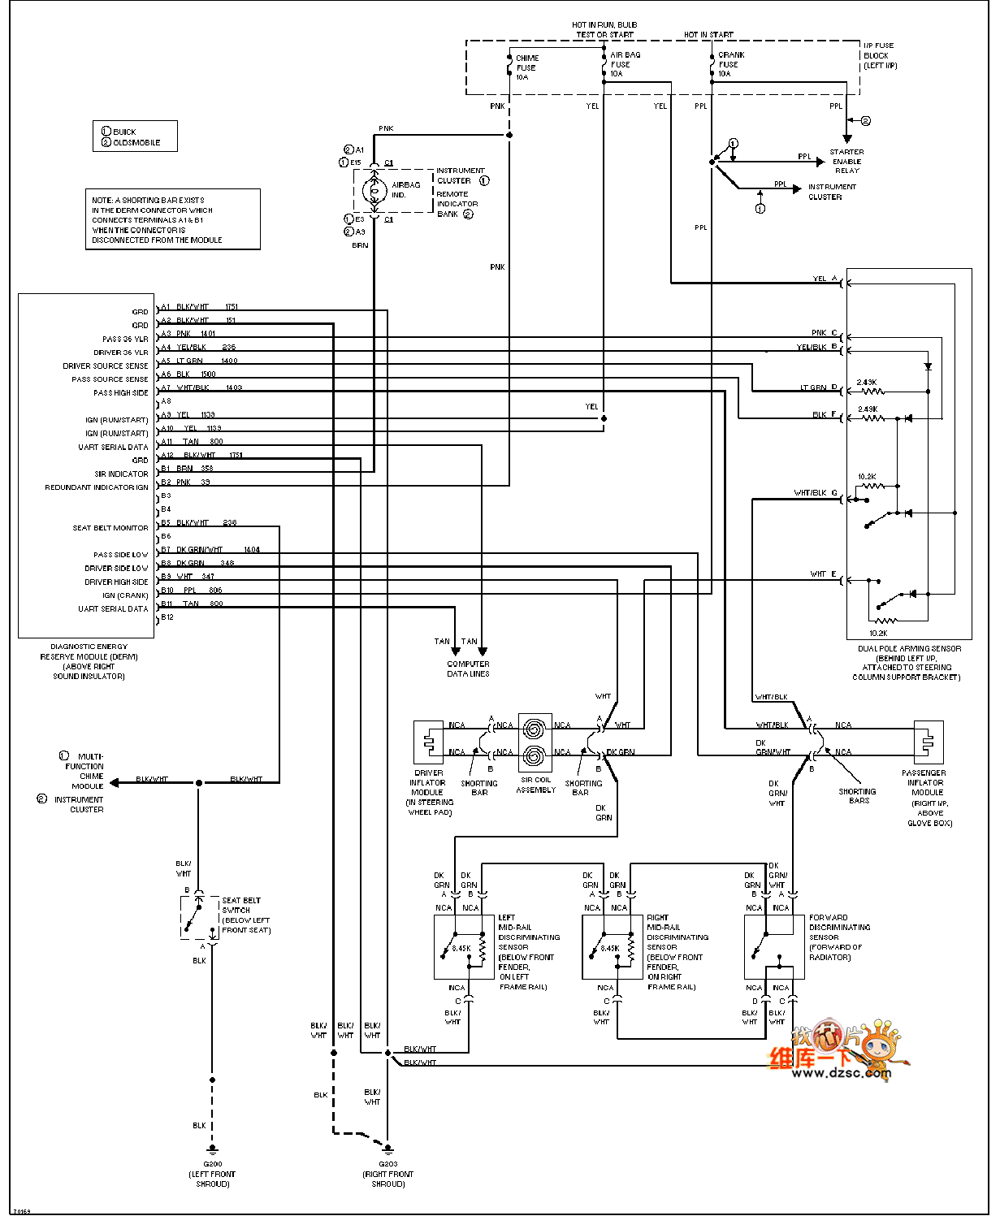 Universal Oldsmobile SRS circuit diagram